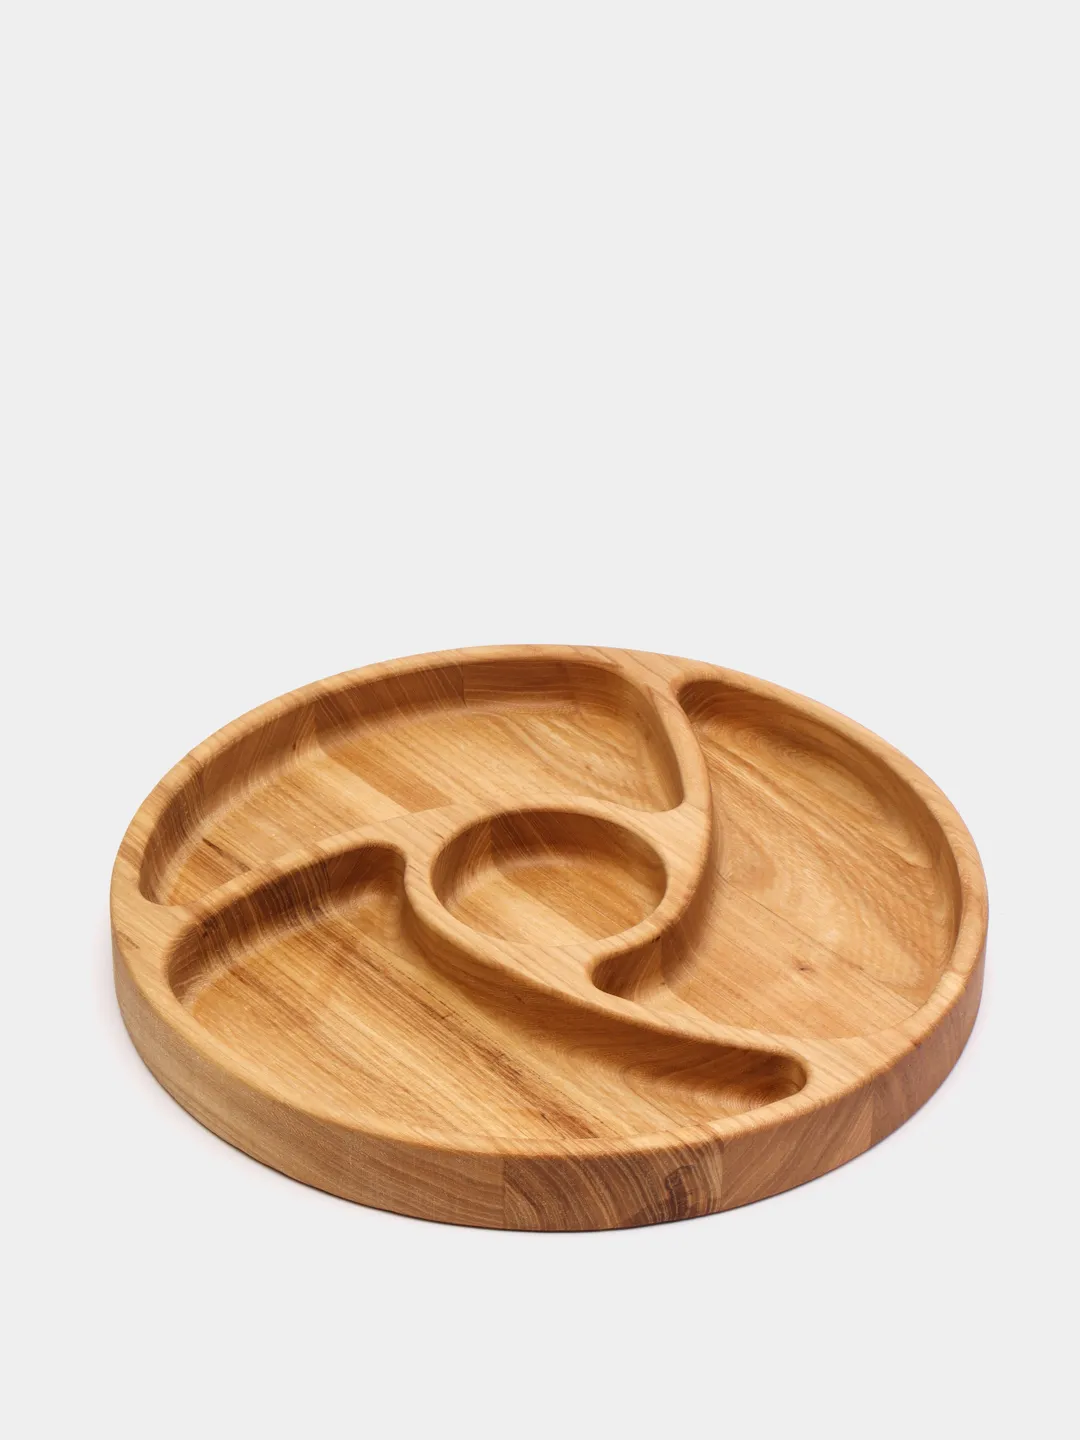 Тарелки деревянные | Купить деревянные тарелки оптом